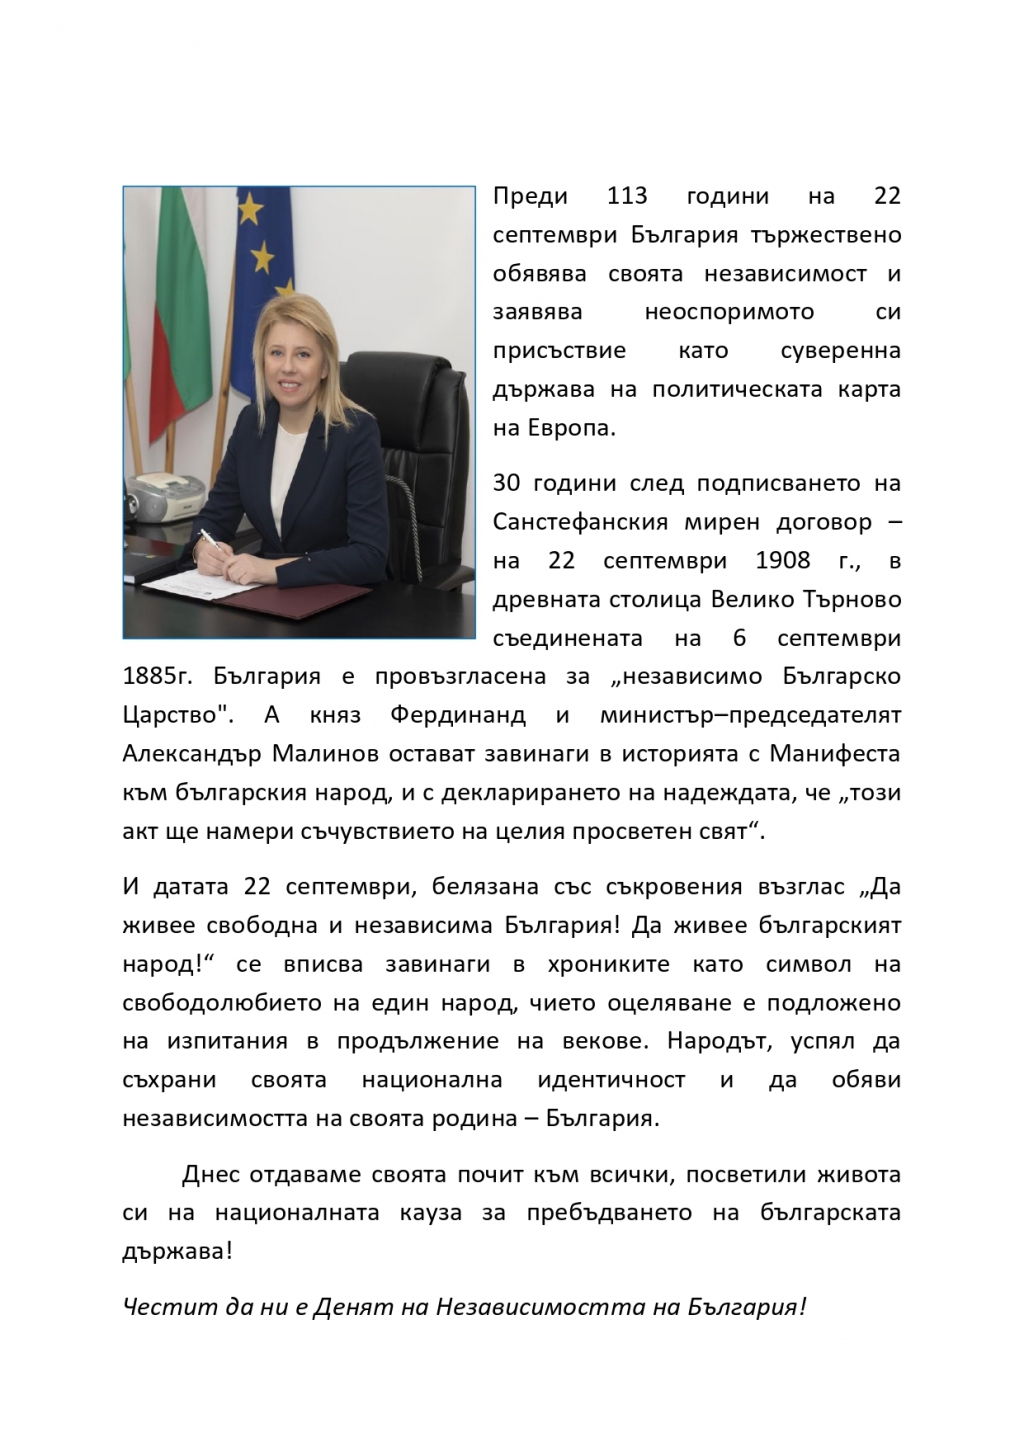 Кметът Соня Георгиева:  На 22 септември отдаваме своята почит към всички, посветили живота си на националната кауза за пребъдването на българската държава